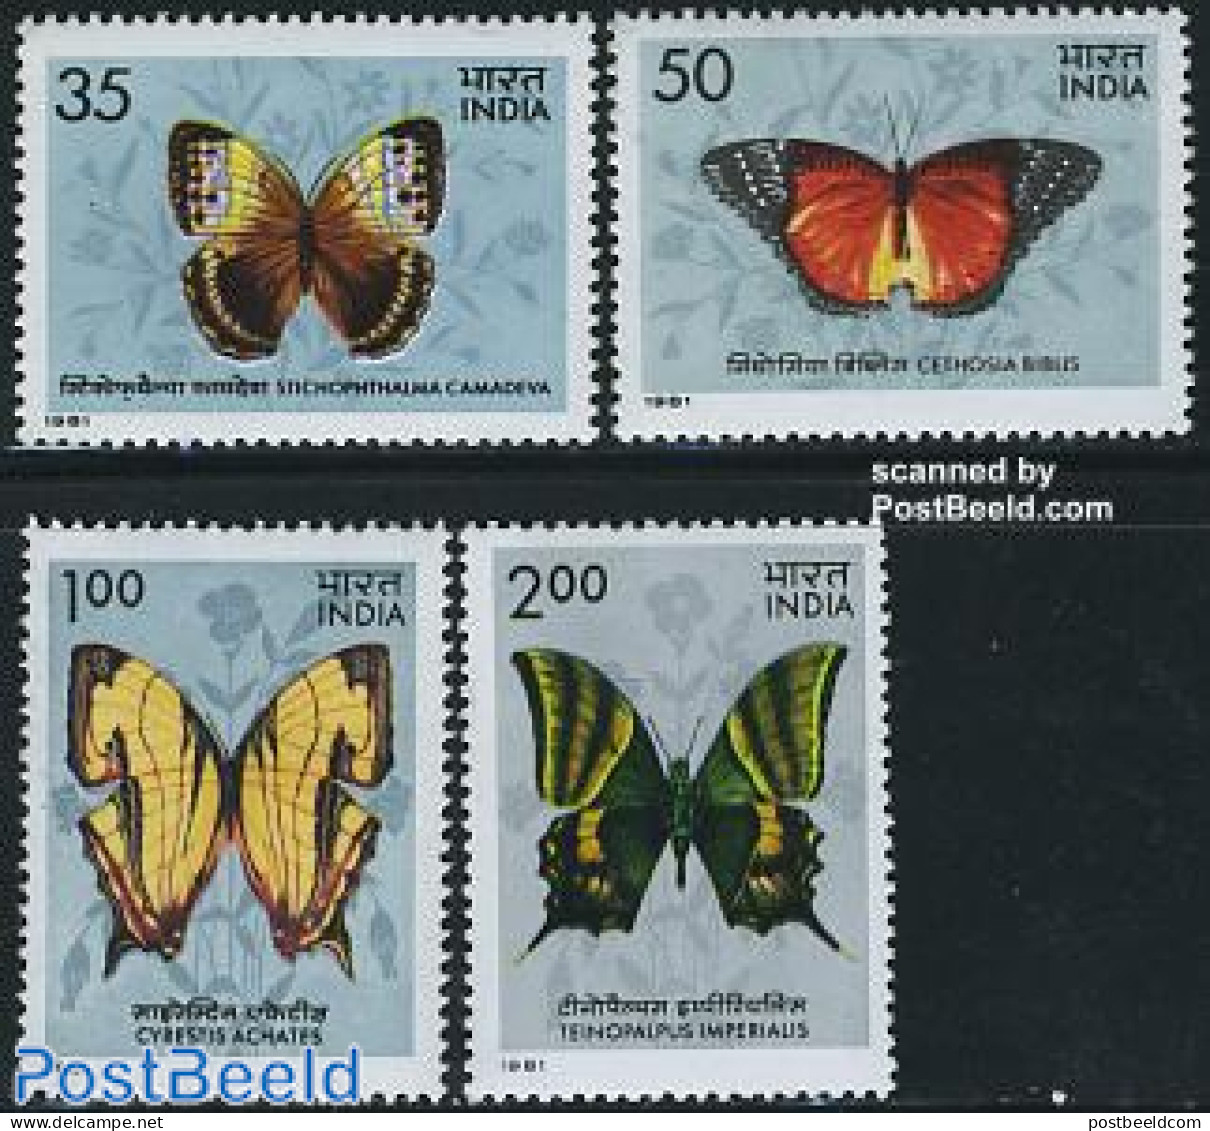 India 1981 Butterflies 4v, Mint NH, Nature - Butterflies - Nuevos